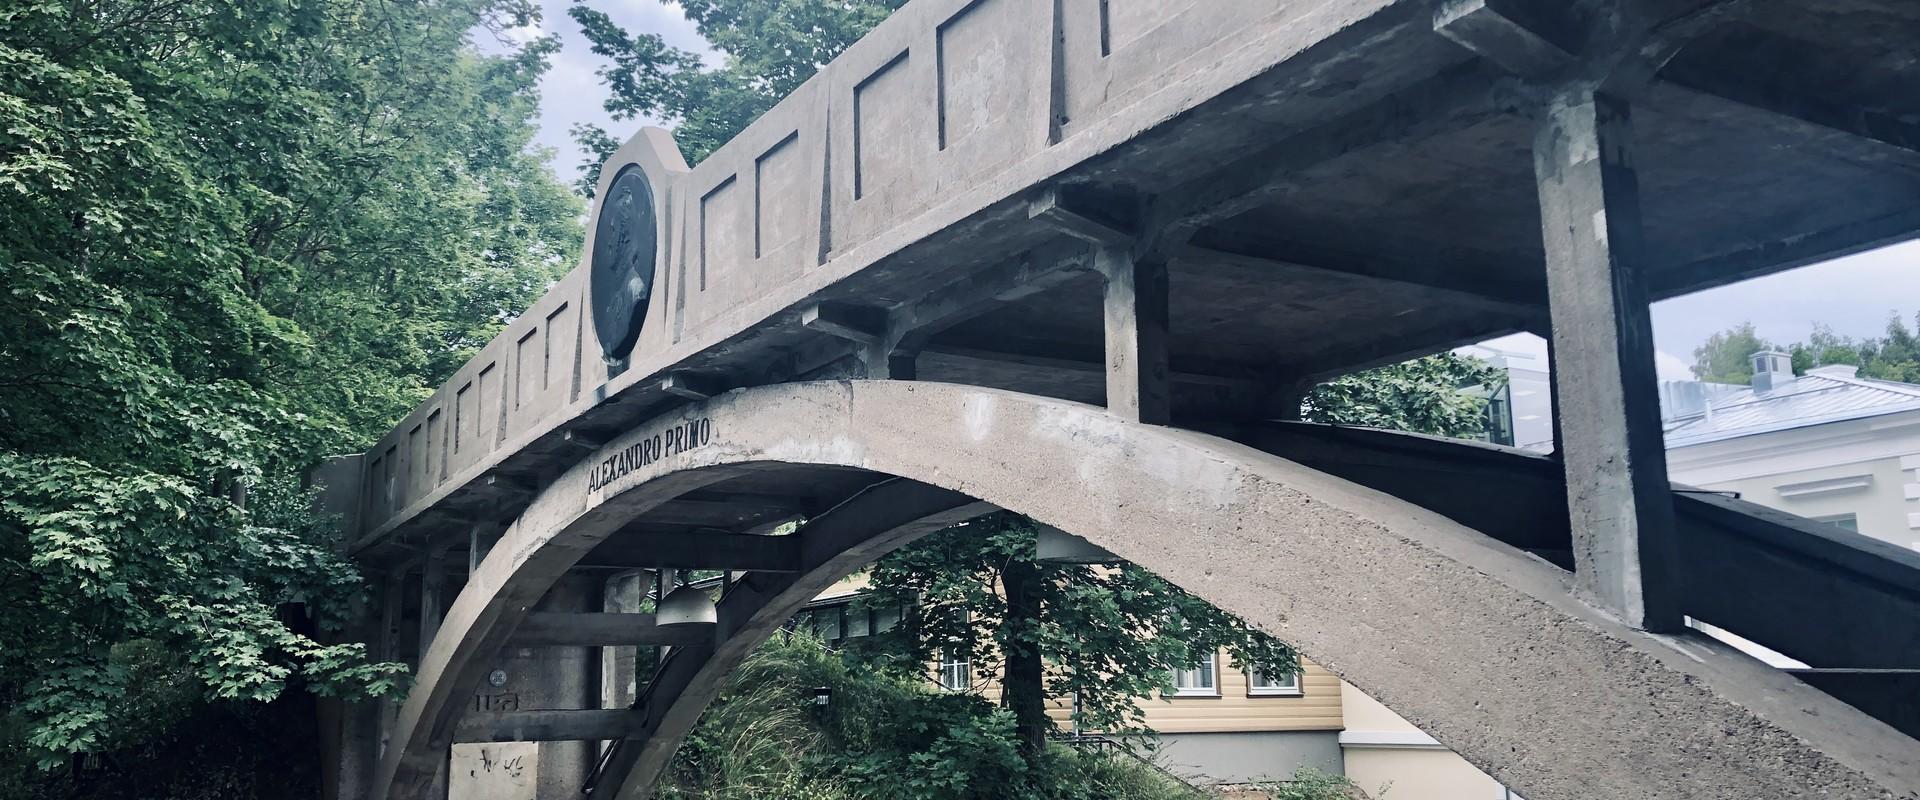 Tartu Kuradisild / Teufelsbrücke